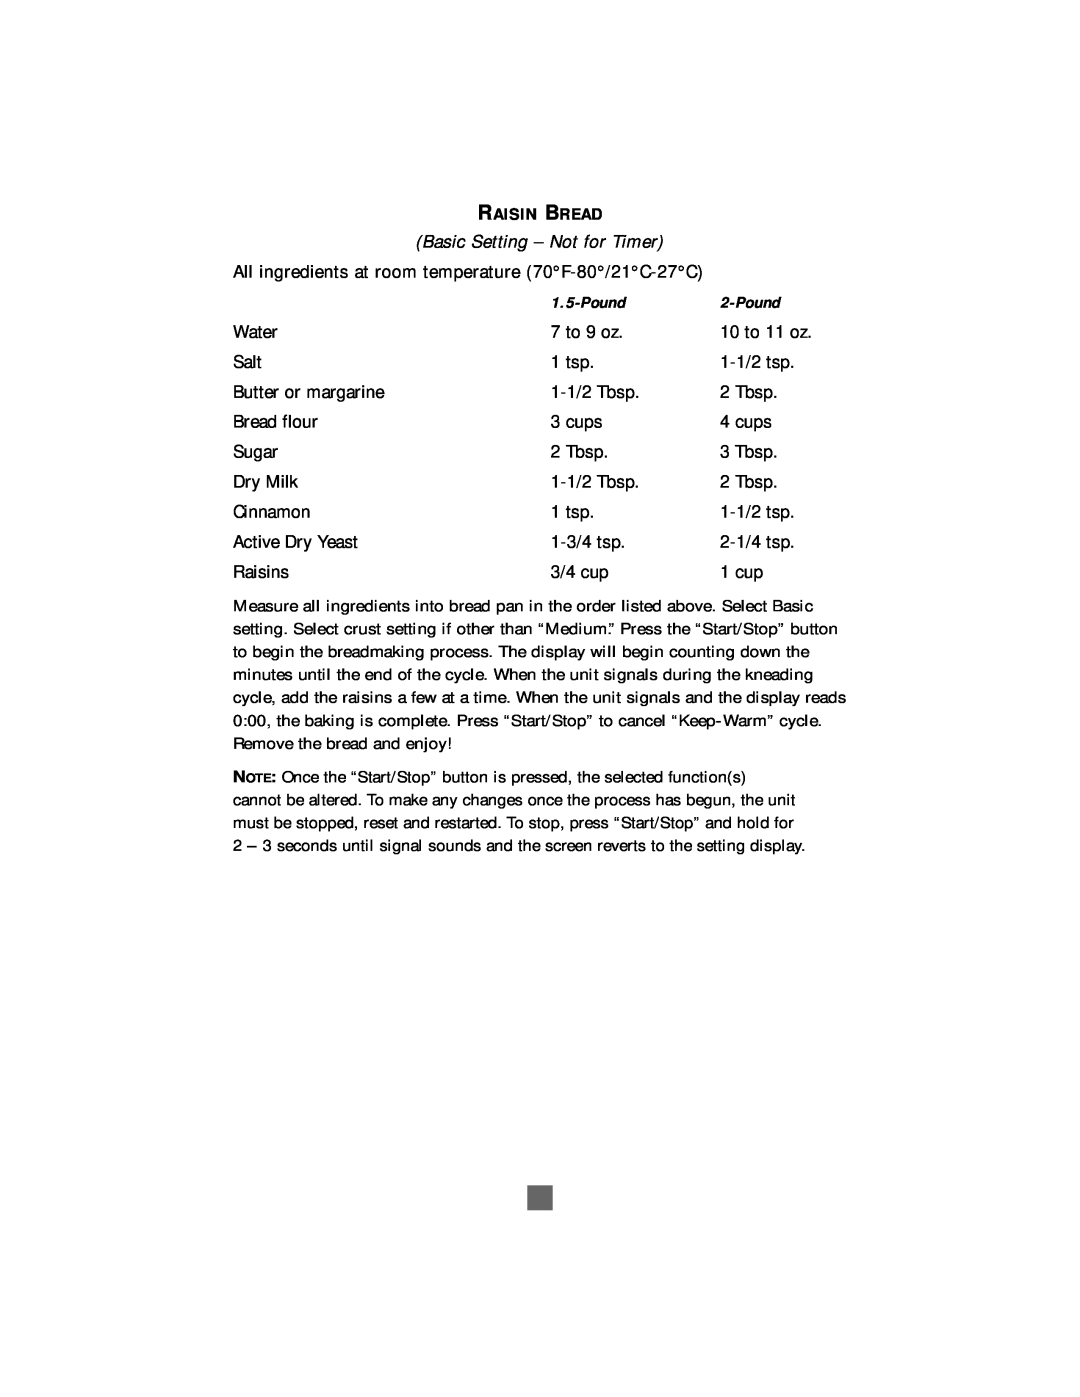 Sunbeam Bread/Dough Maker manual Basic Setting - Not for Timer, Raisin Bread 